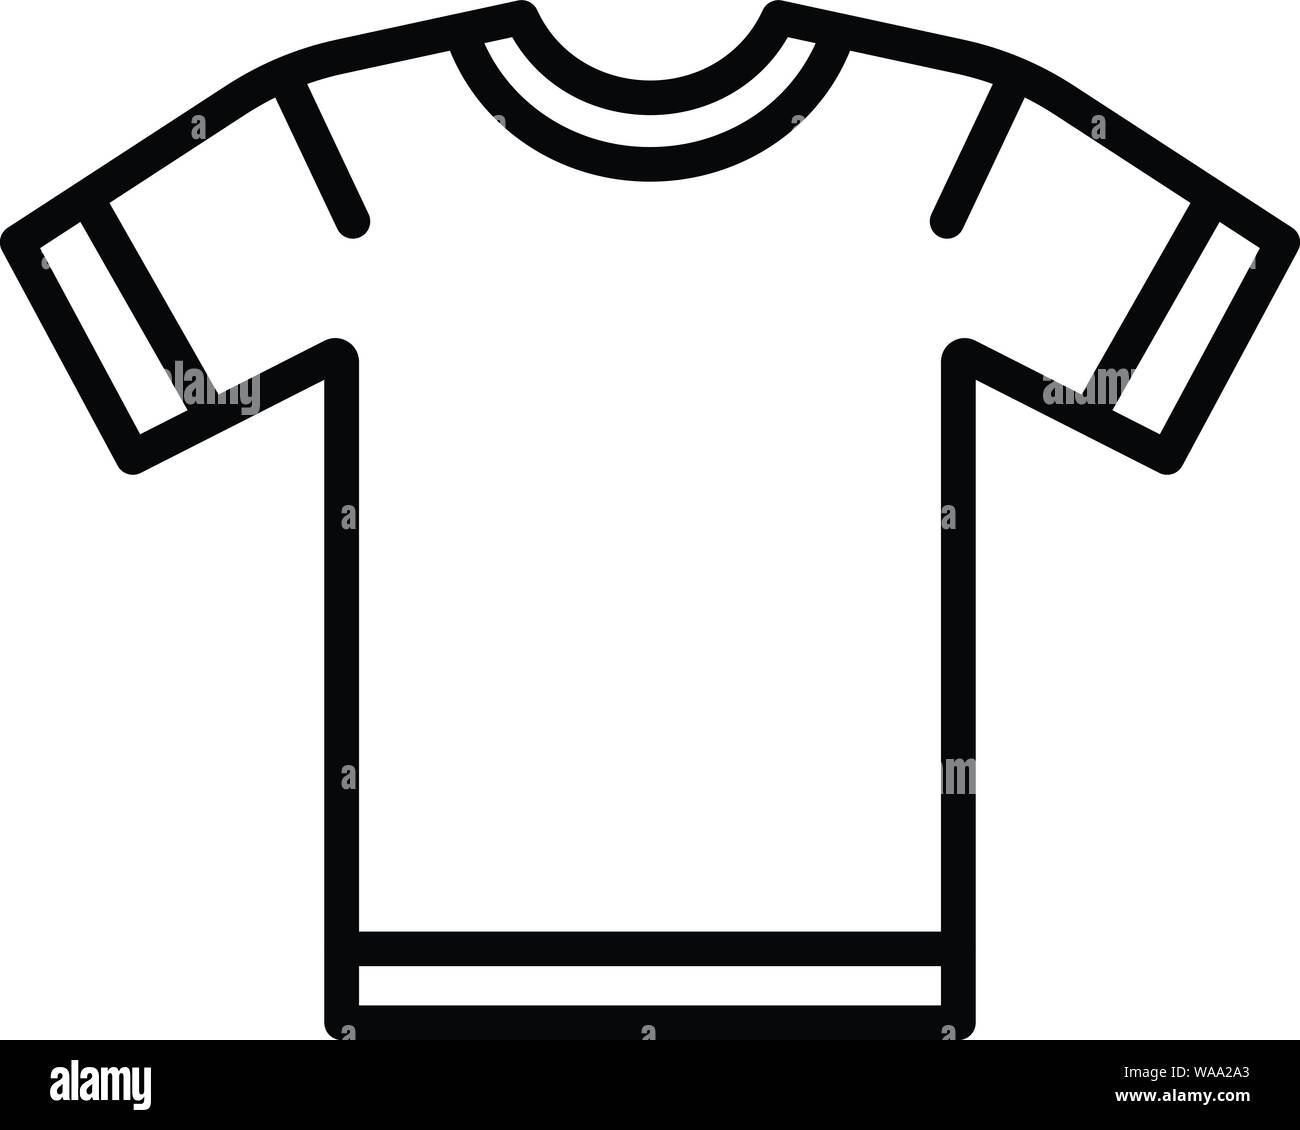 Soccer brazil shirt icon, outline style Stock Vector Image & Art